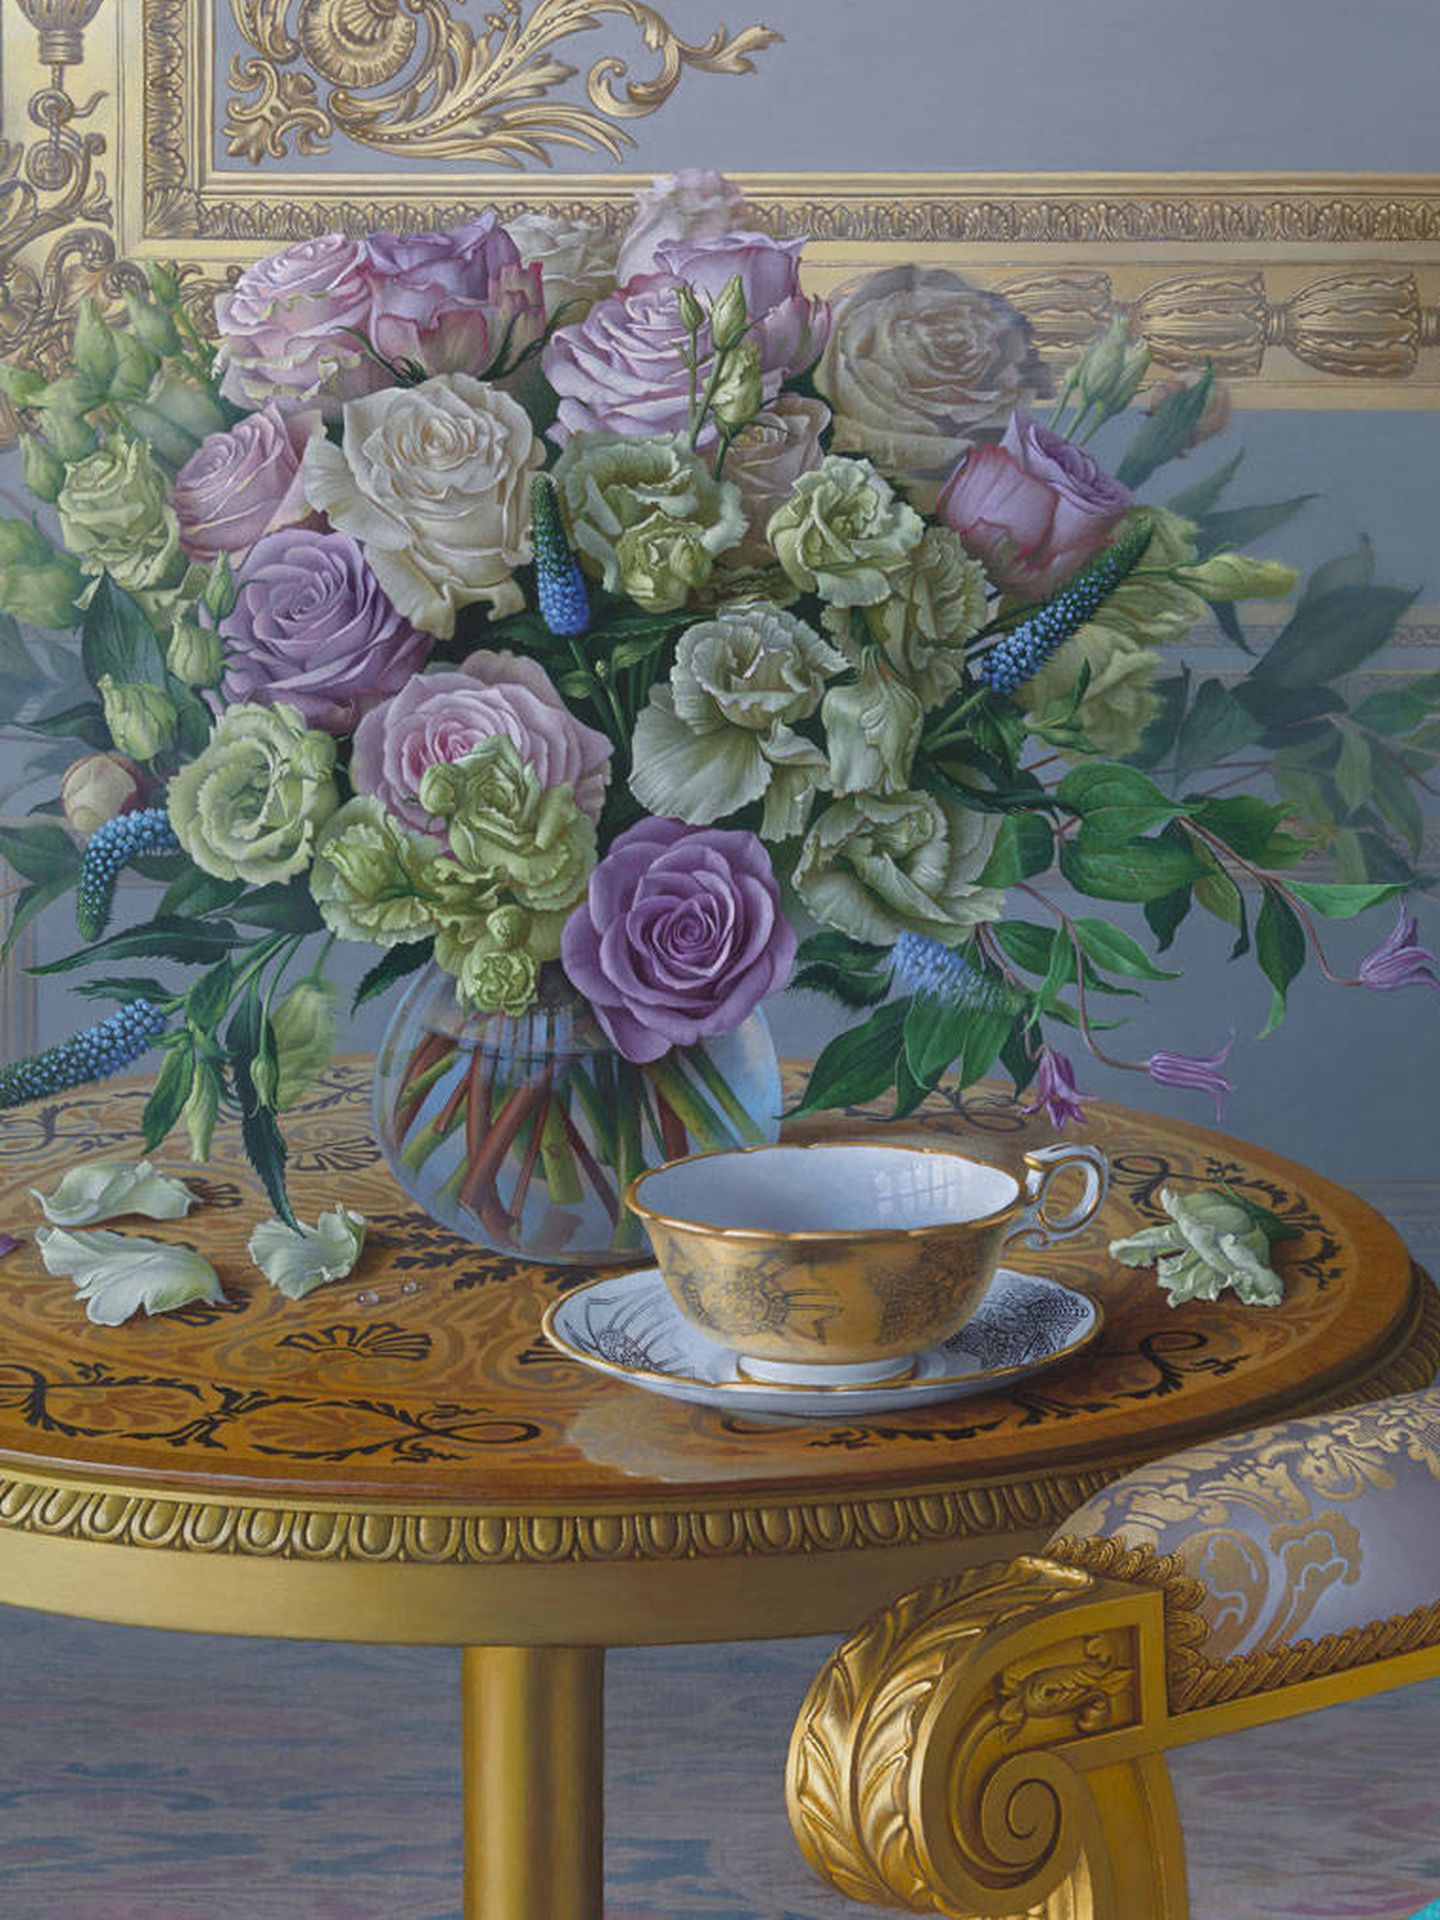 Detalle de la taza de té en el retrato de Isabel II. (Cortesía) 